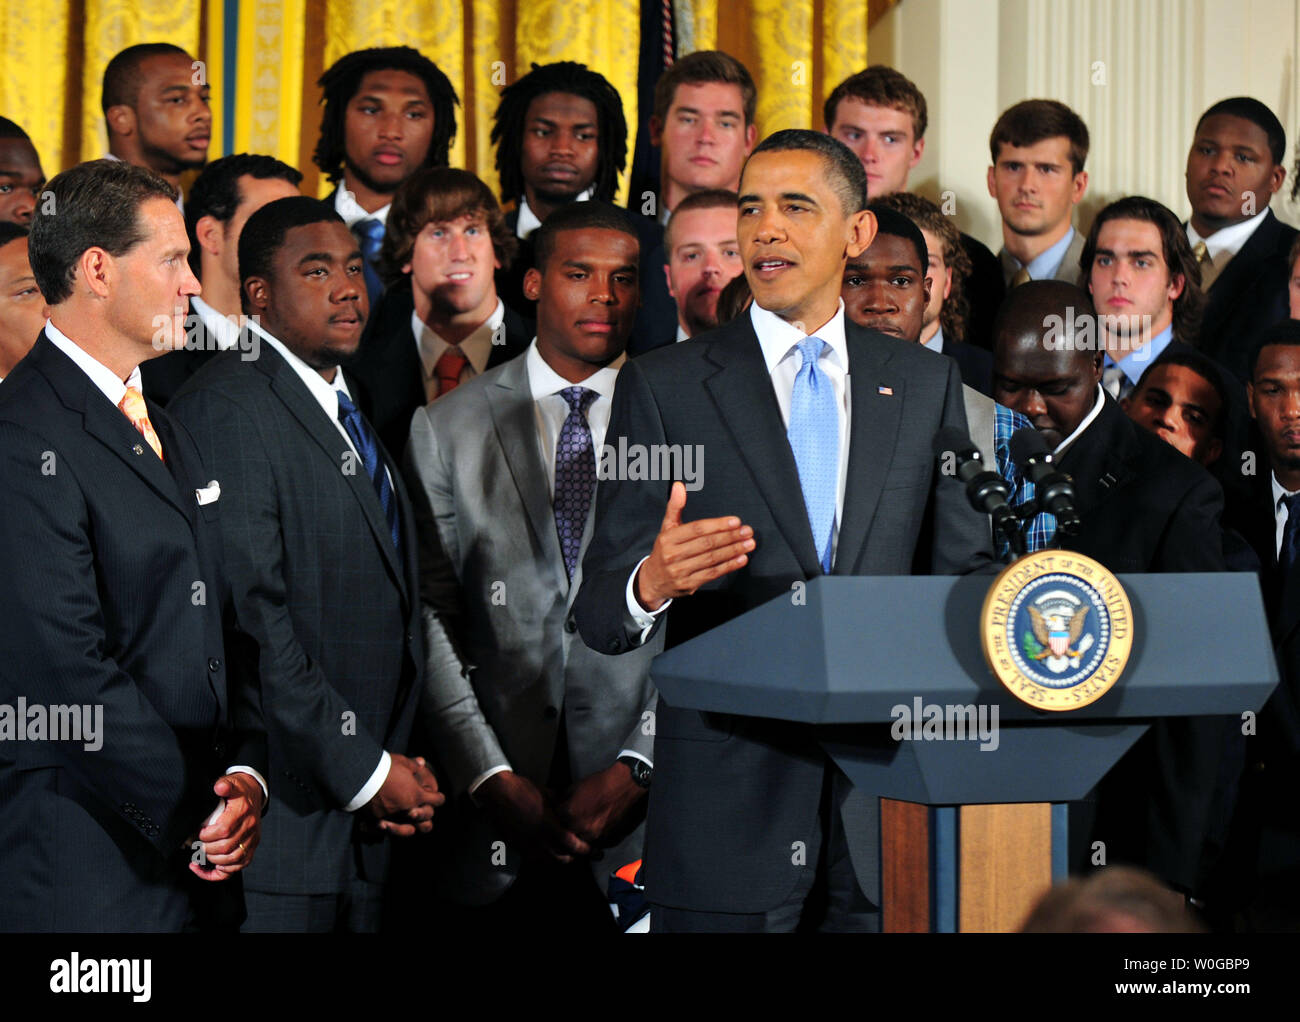 Le président Barack Obama prononce une allocution lors d'une cérémonie en l'honneur du Champion NCAA 2010 Auburn Tigers dans l'Est à la Maison Blanche à Washington le 8 juin 2011. UPI/Kevin Dietsch Banque D'Images